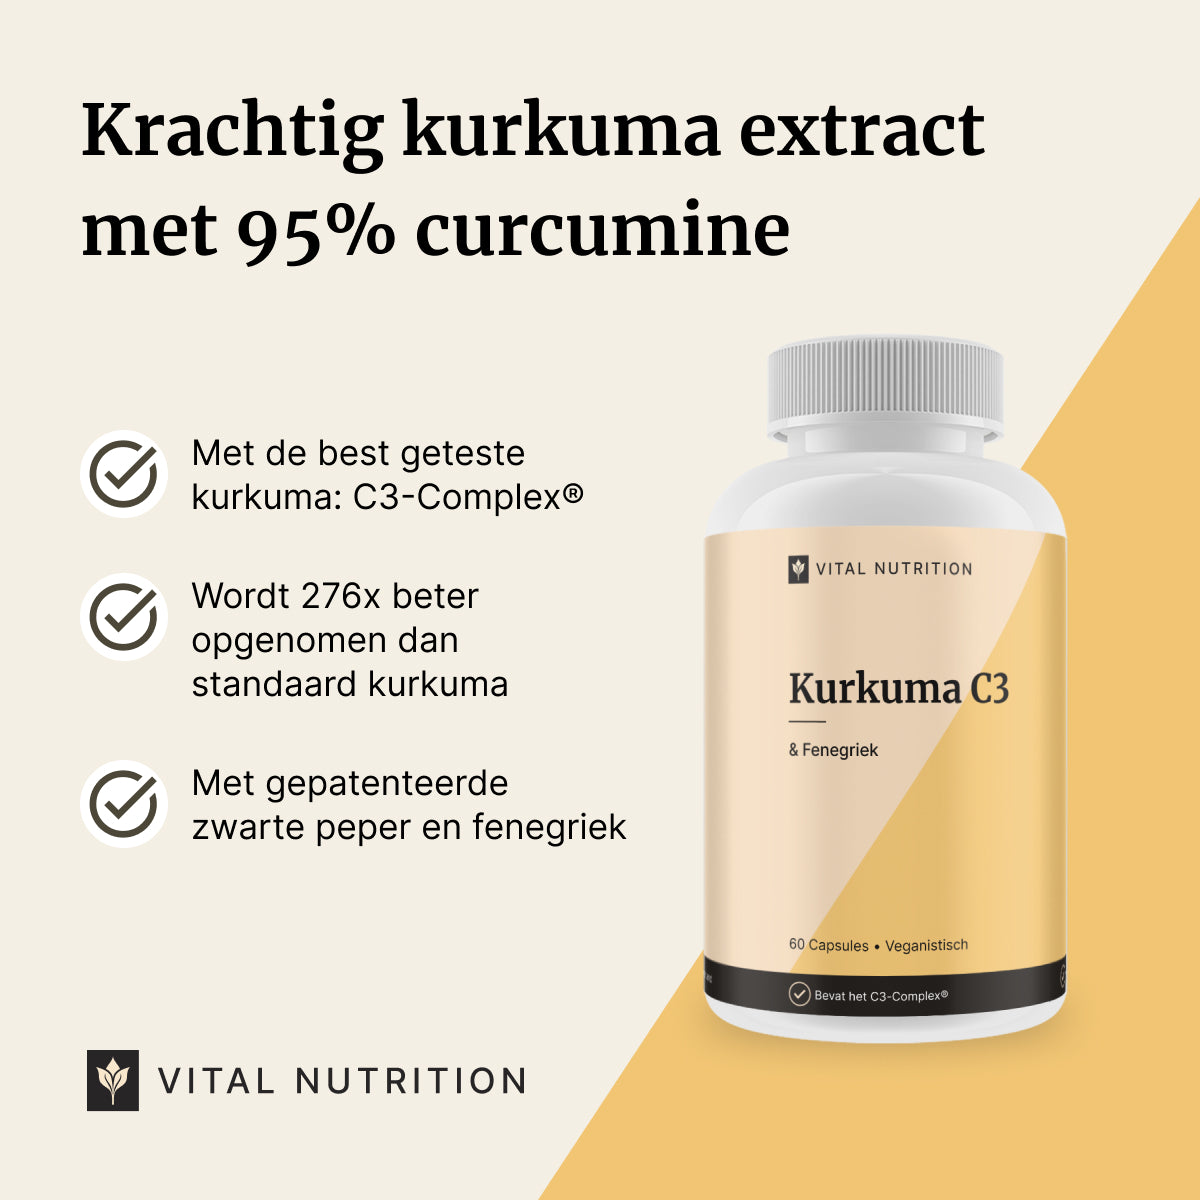 Beschrijving van de voordelen van Kurkuma C3 van Vital Nutrition